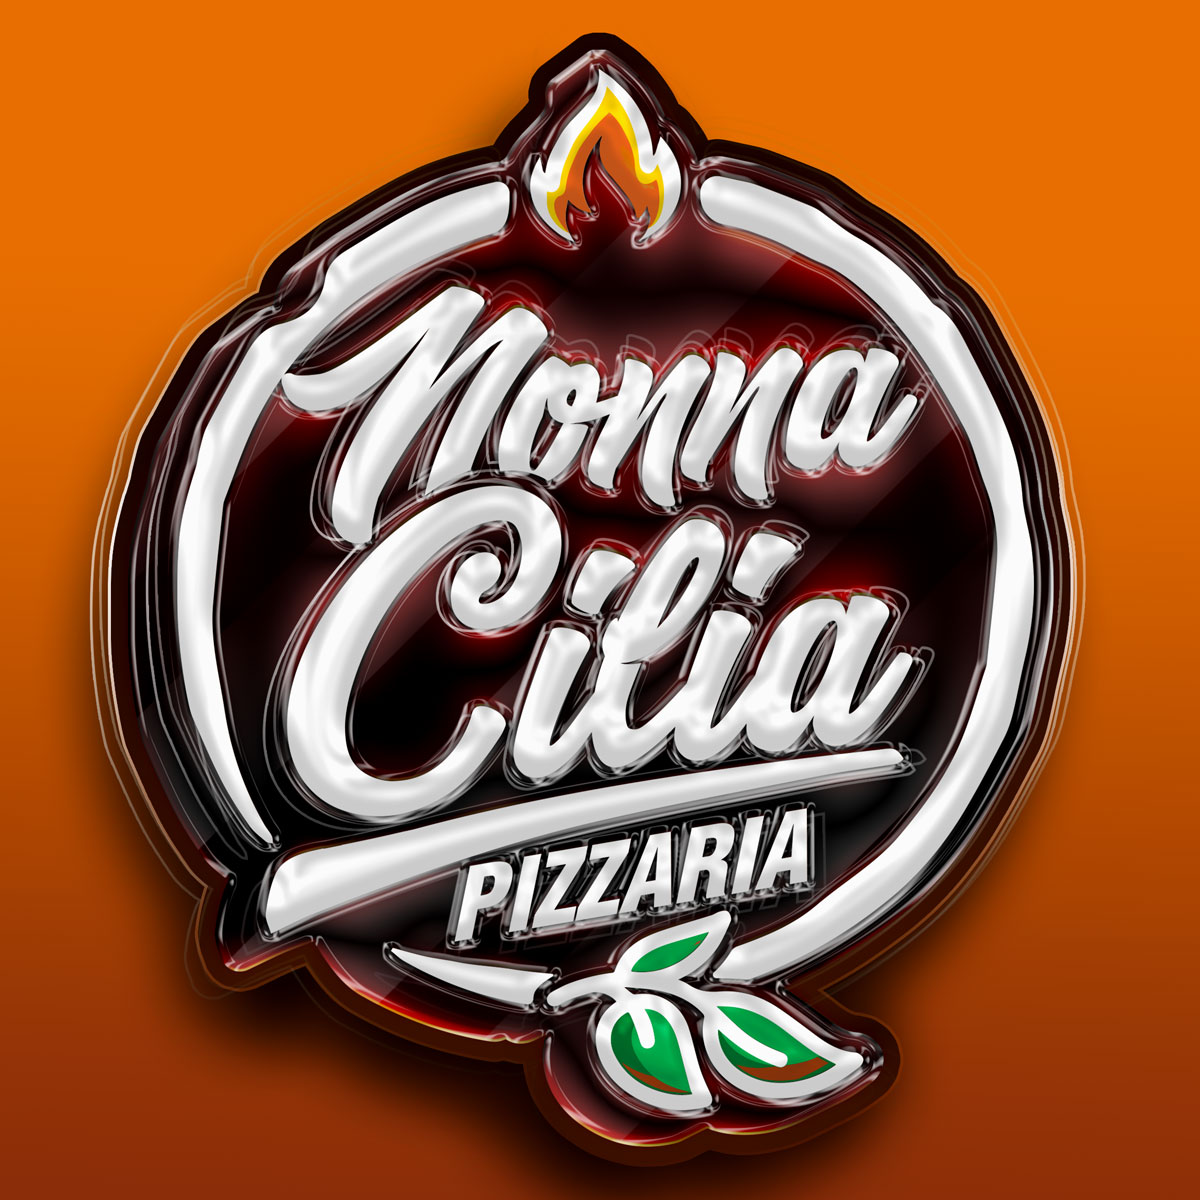 Logo-Pizzaria - Nonna Cilia Pizzaria